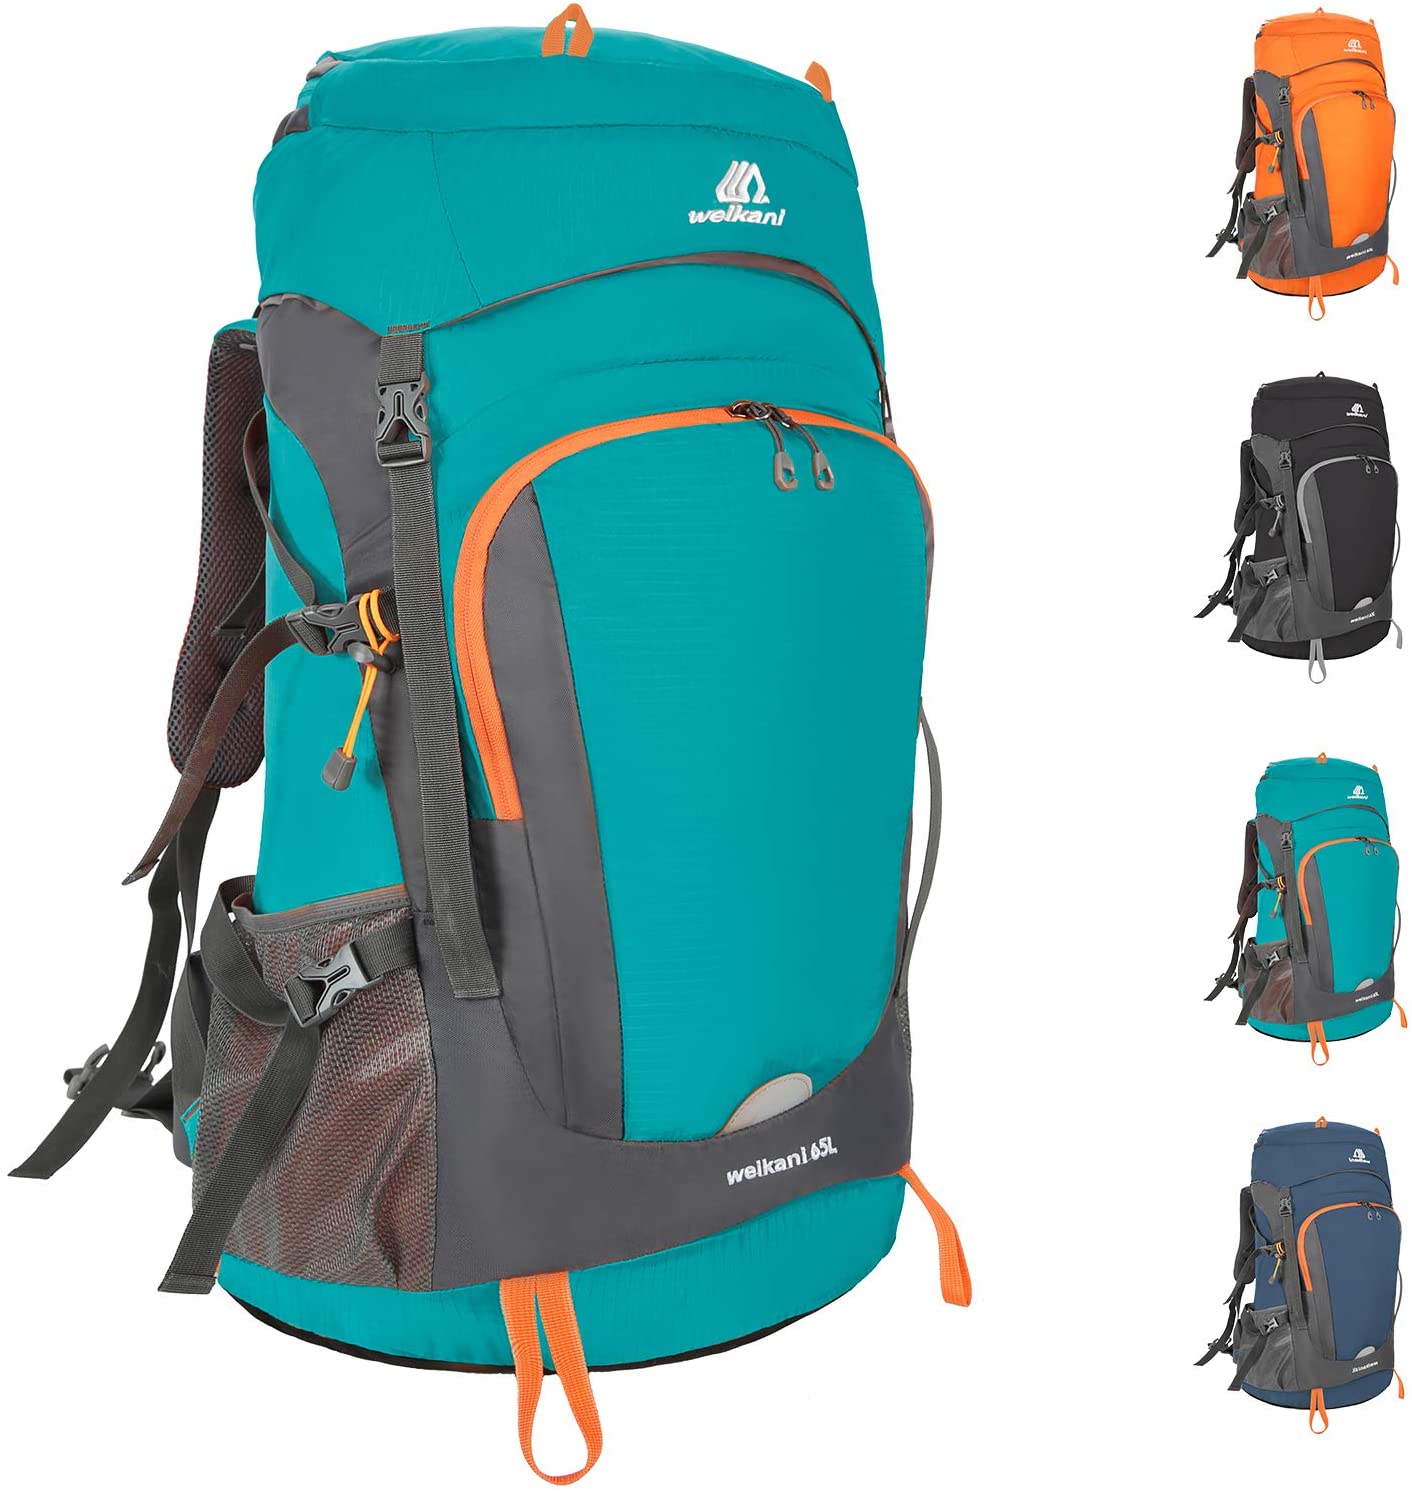 Las mejores mochilas de montaña, acampada y senderismo, Estilo de vida, Escaparate